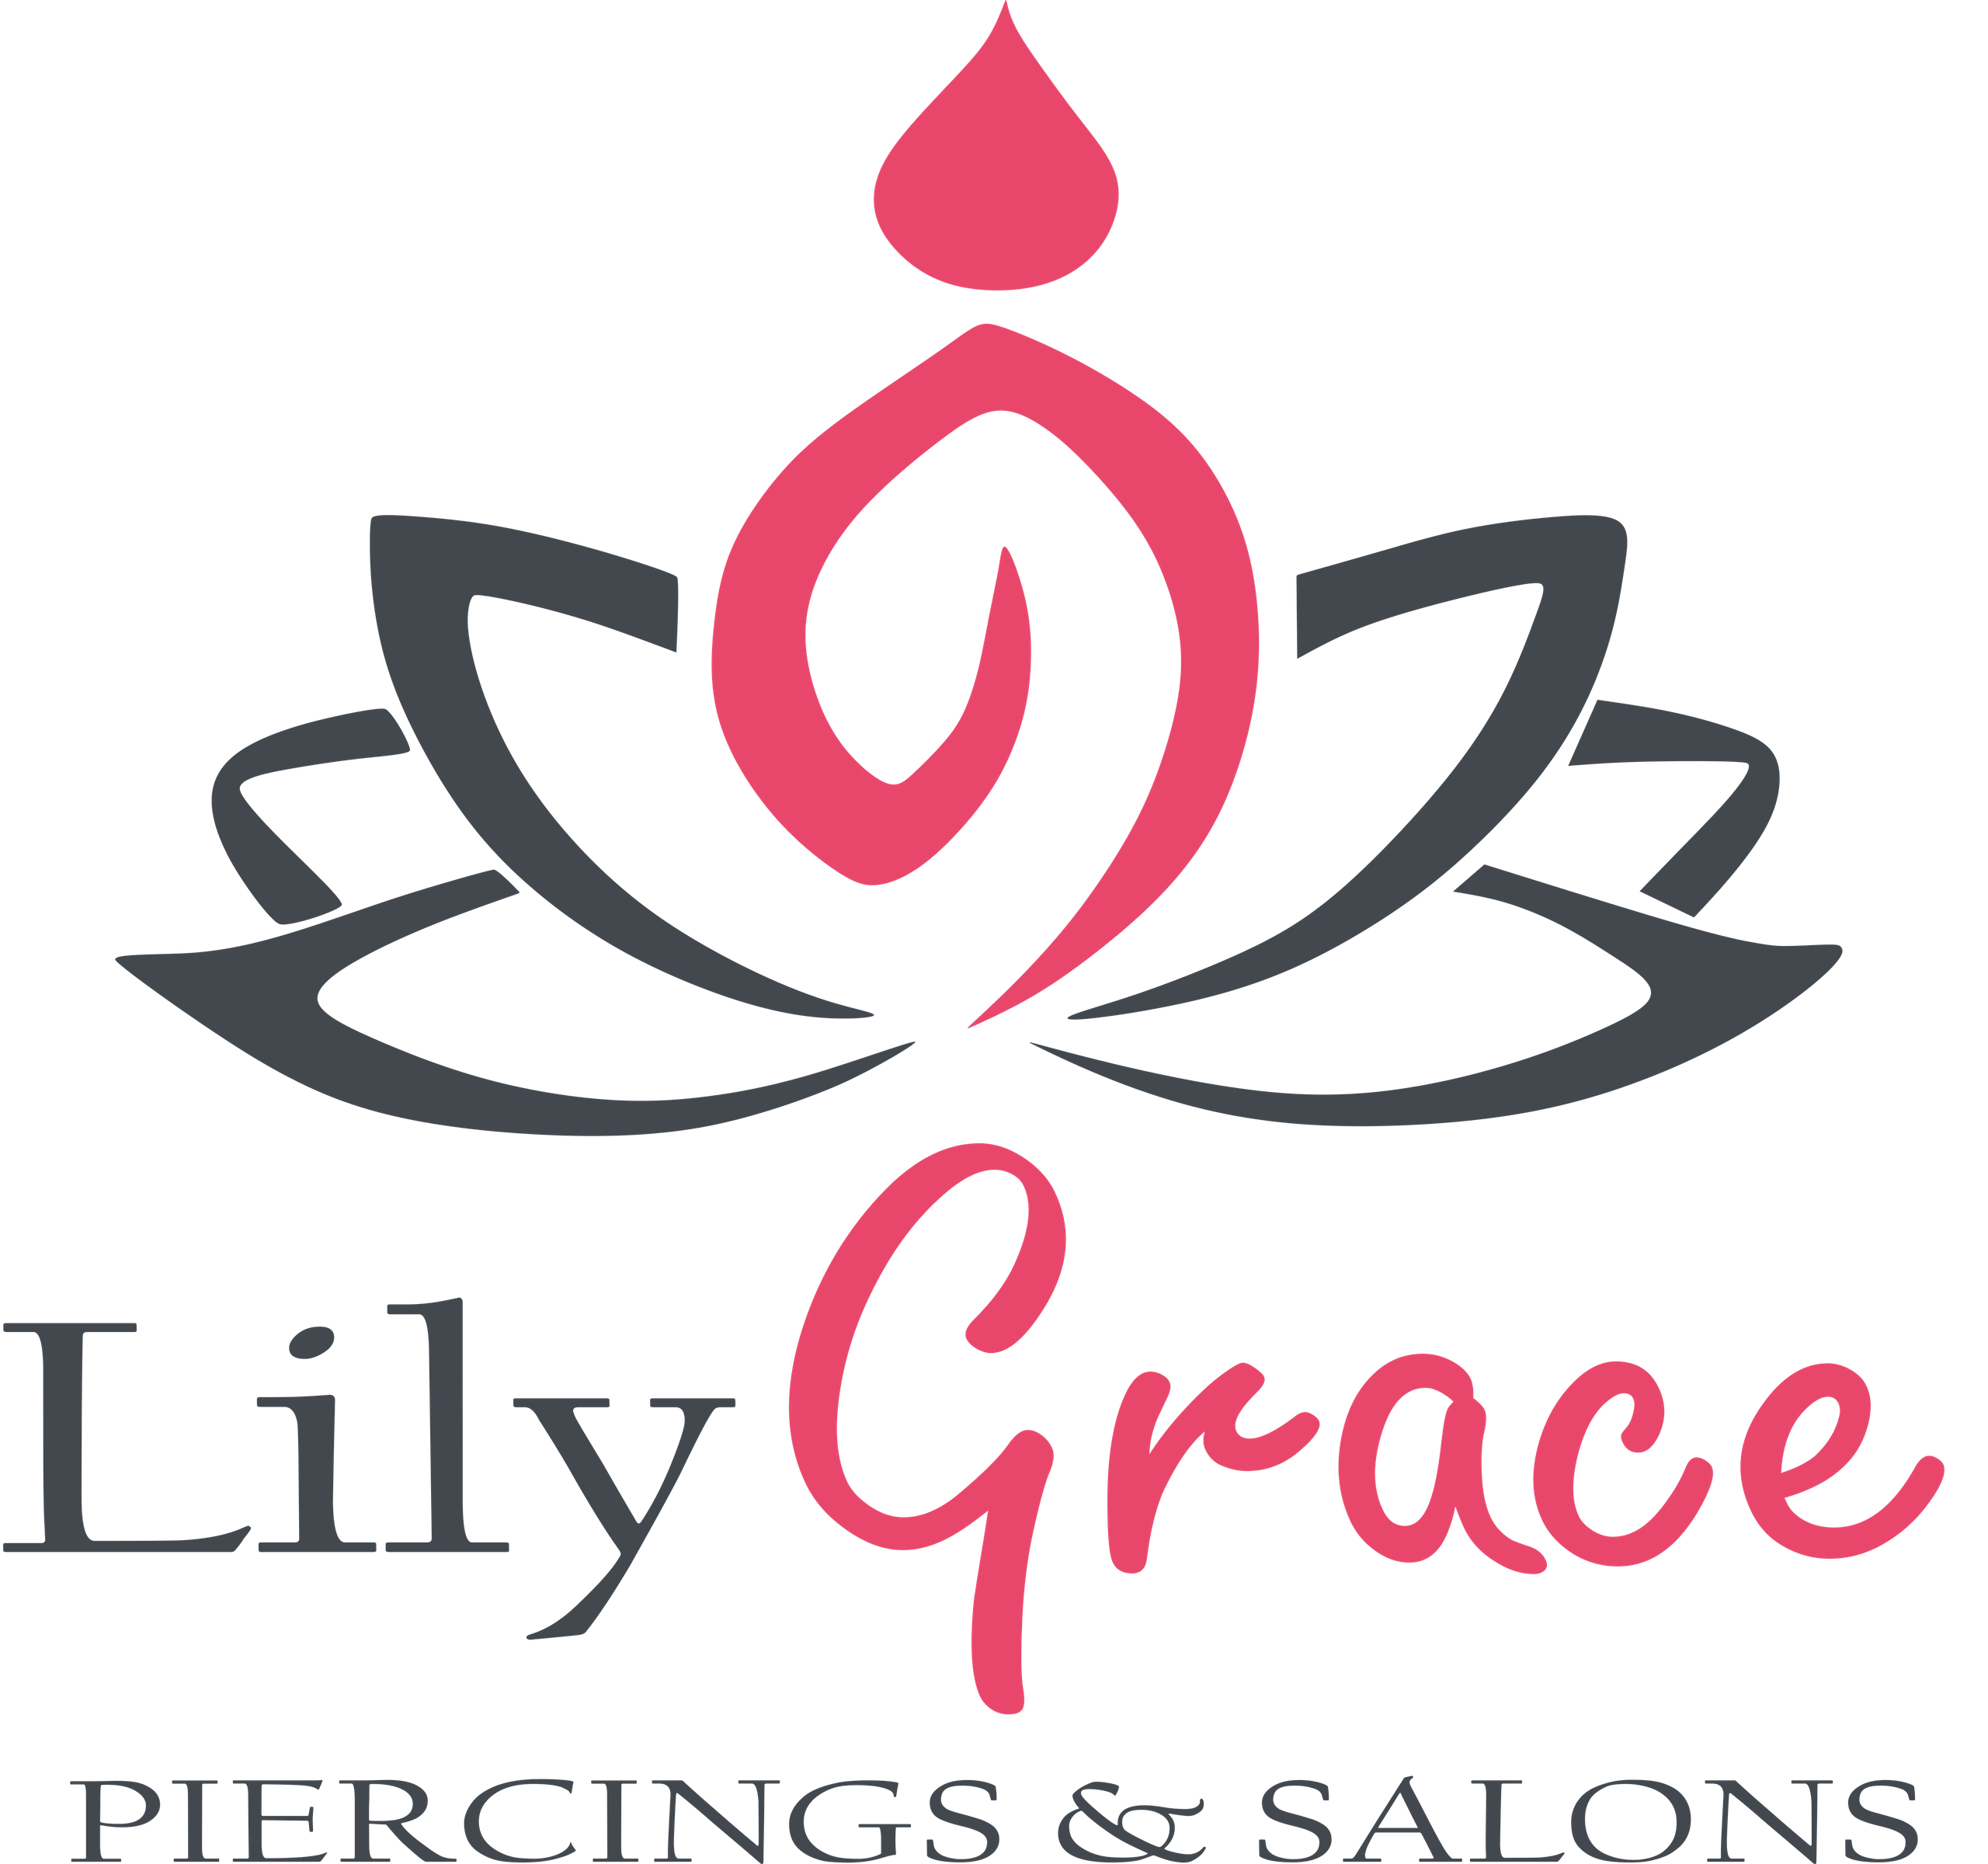 LilyGrace Piercings